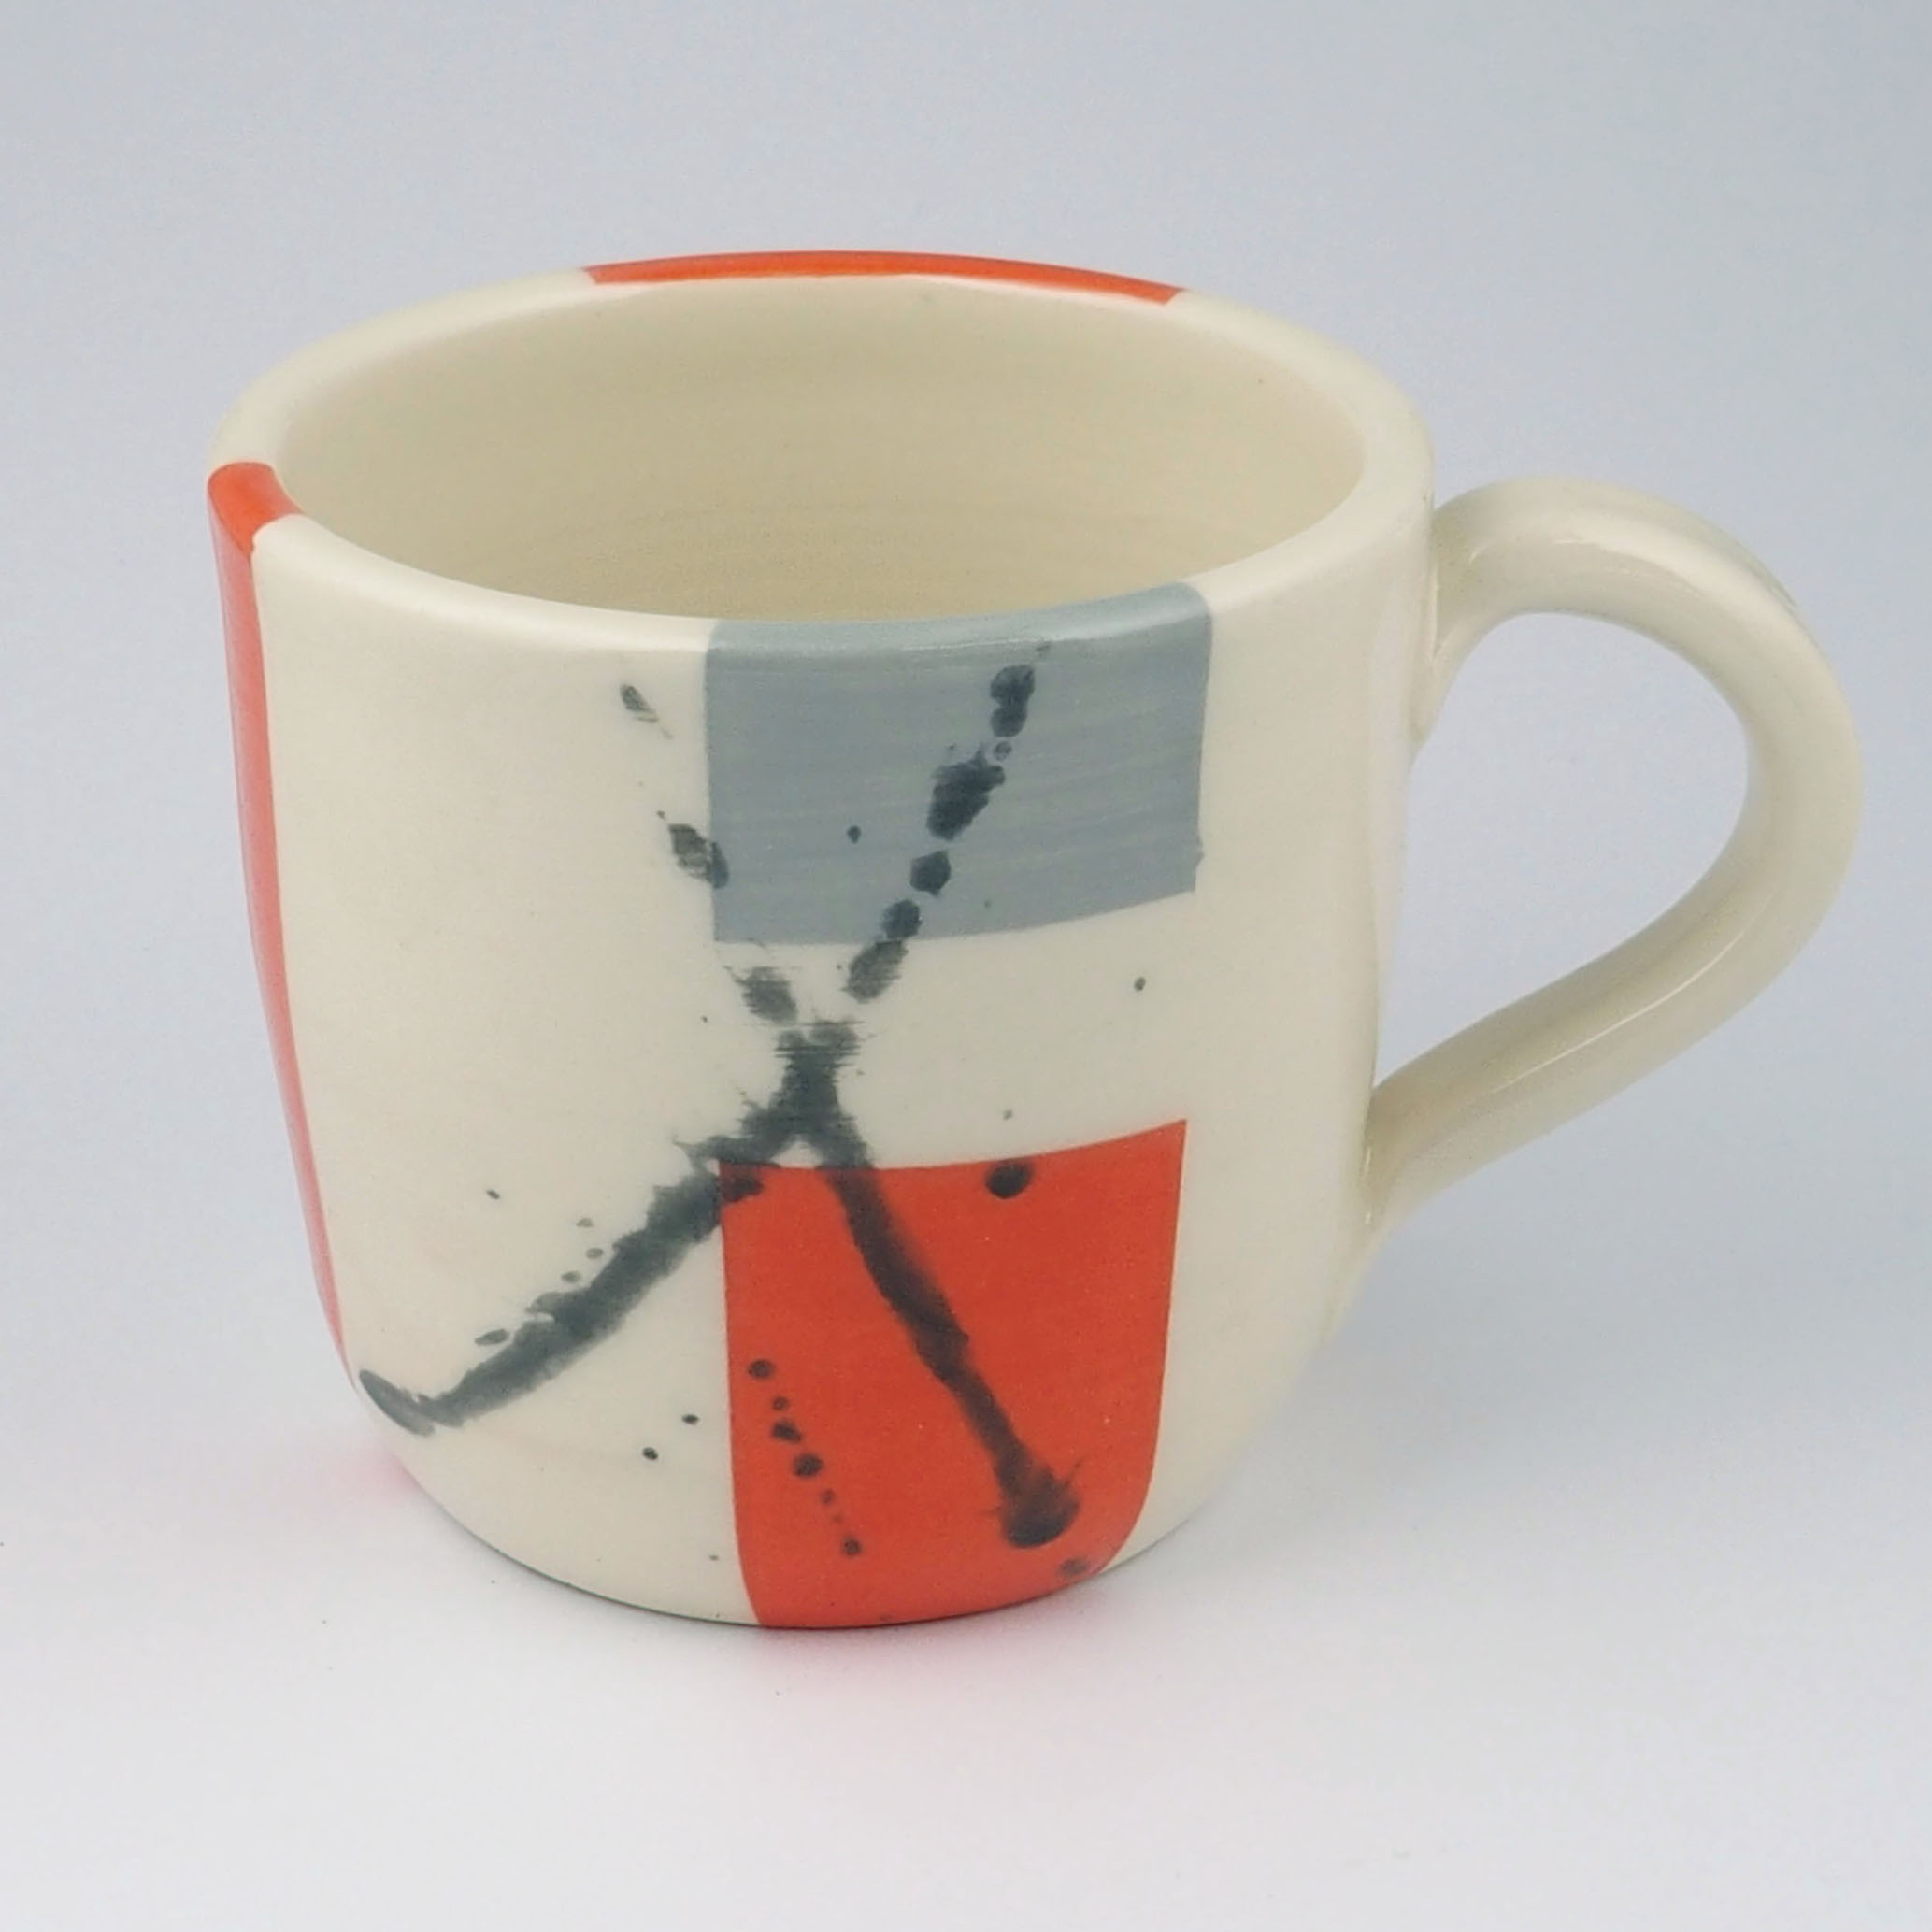 A mug